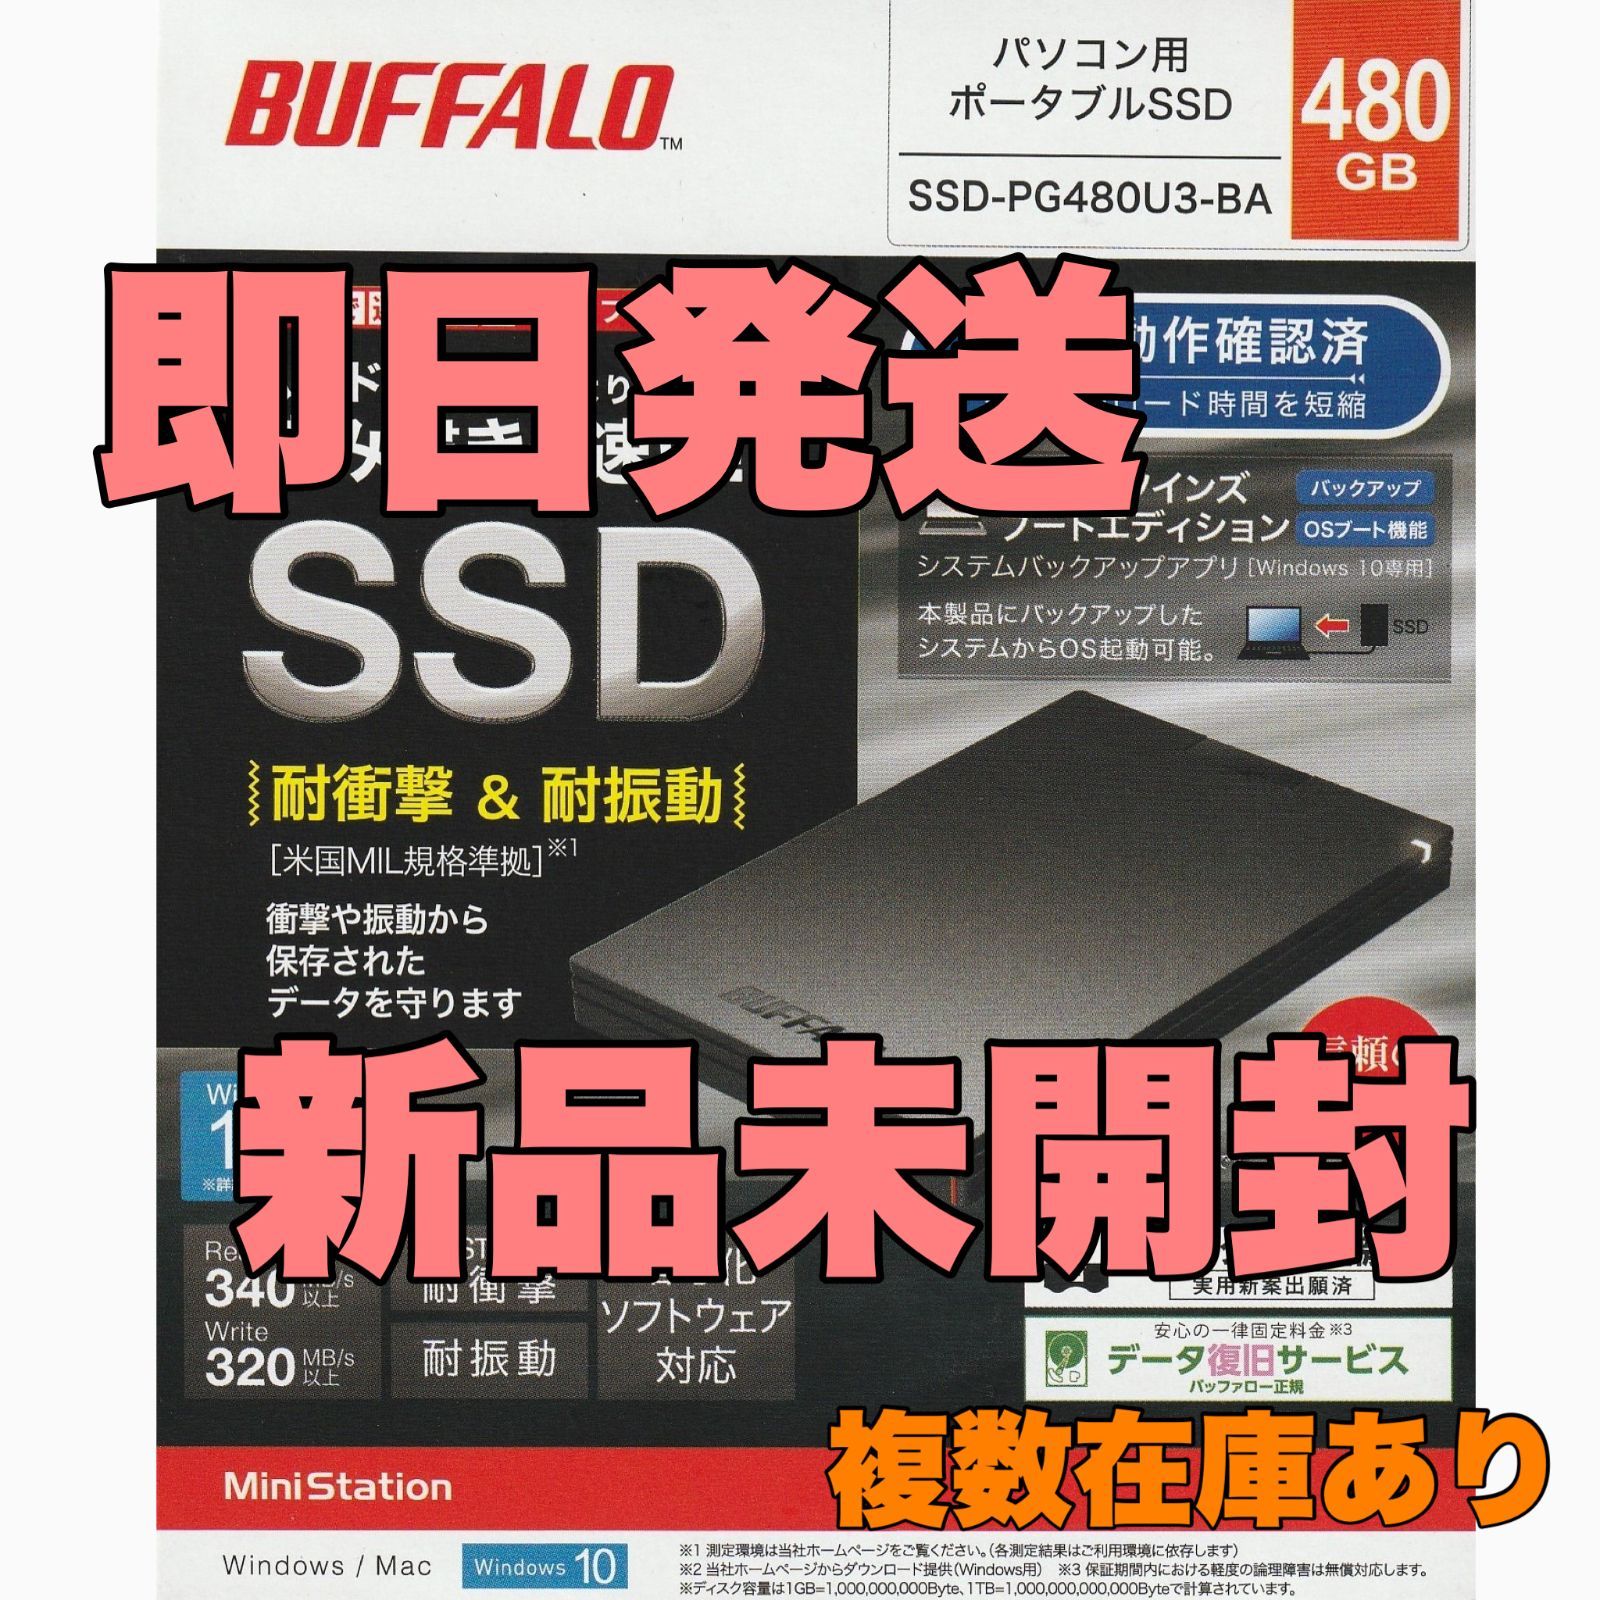 BUFFALO SSD-PG480U3-BA SSD 480GB 新品未開封